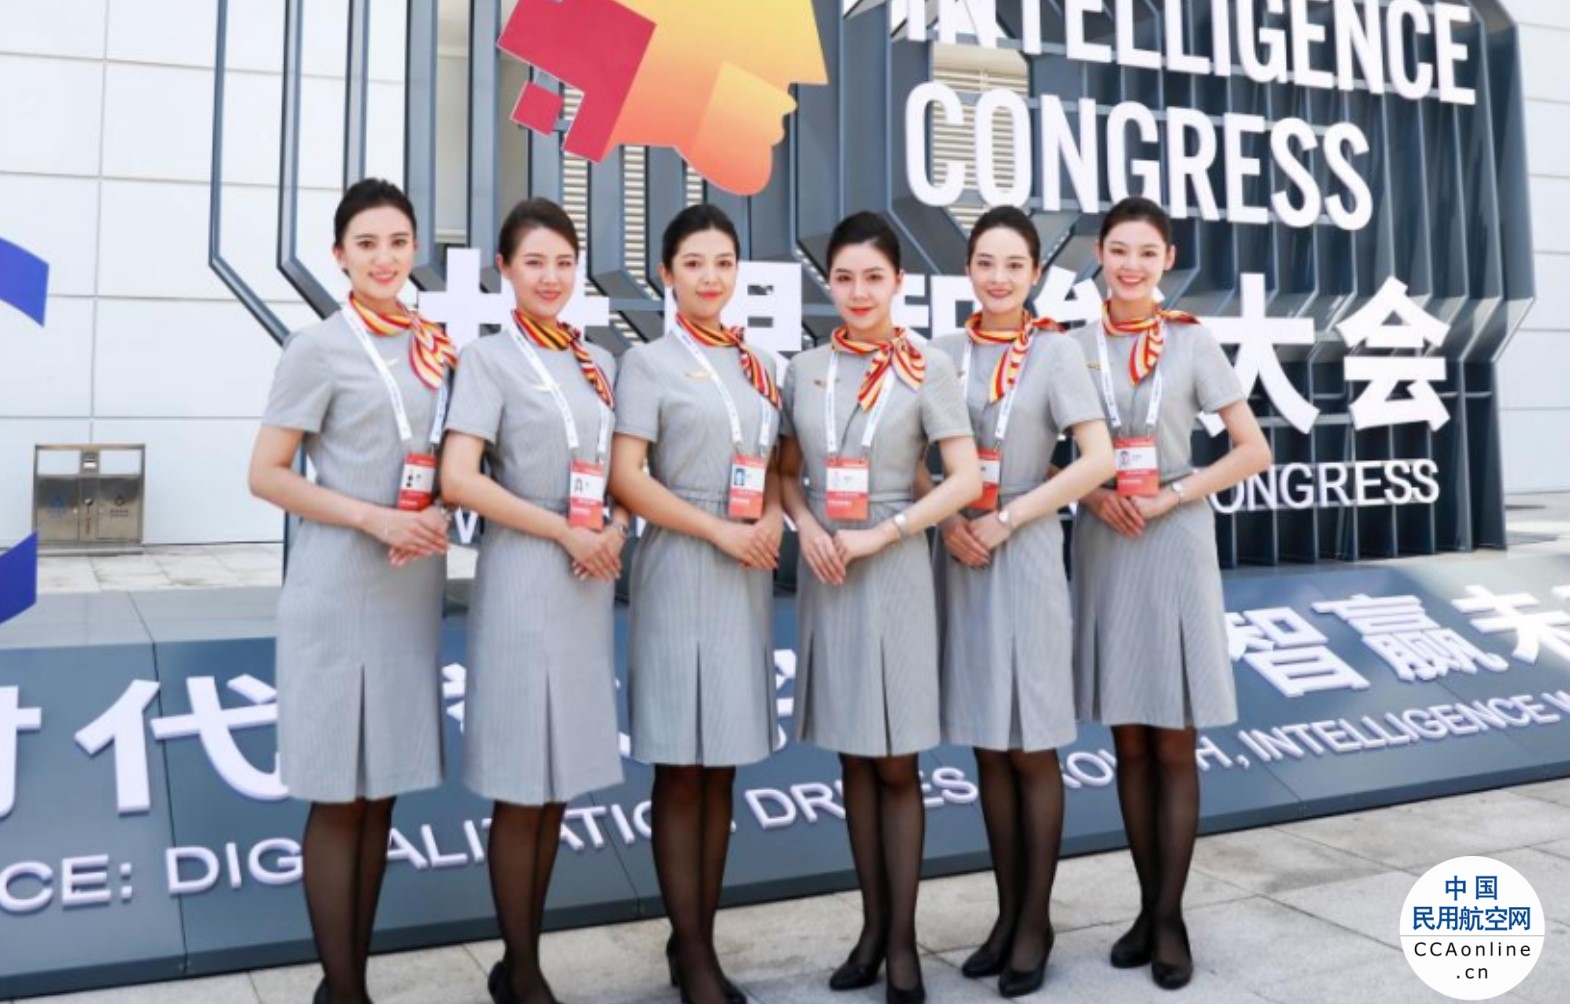 天津航空乘务员亮相第六届世界智能大会，倾情为大会提供礼仪服务